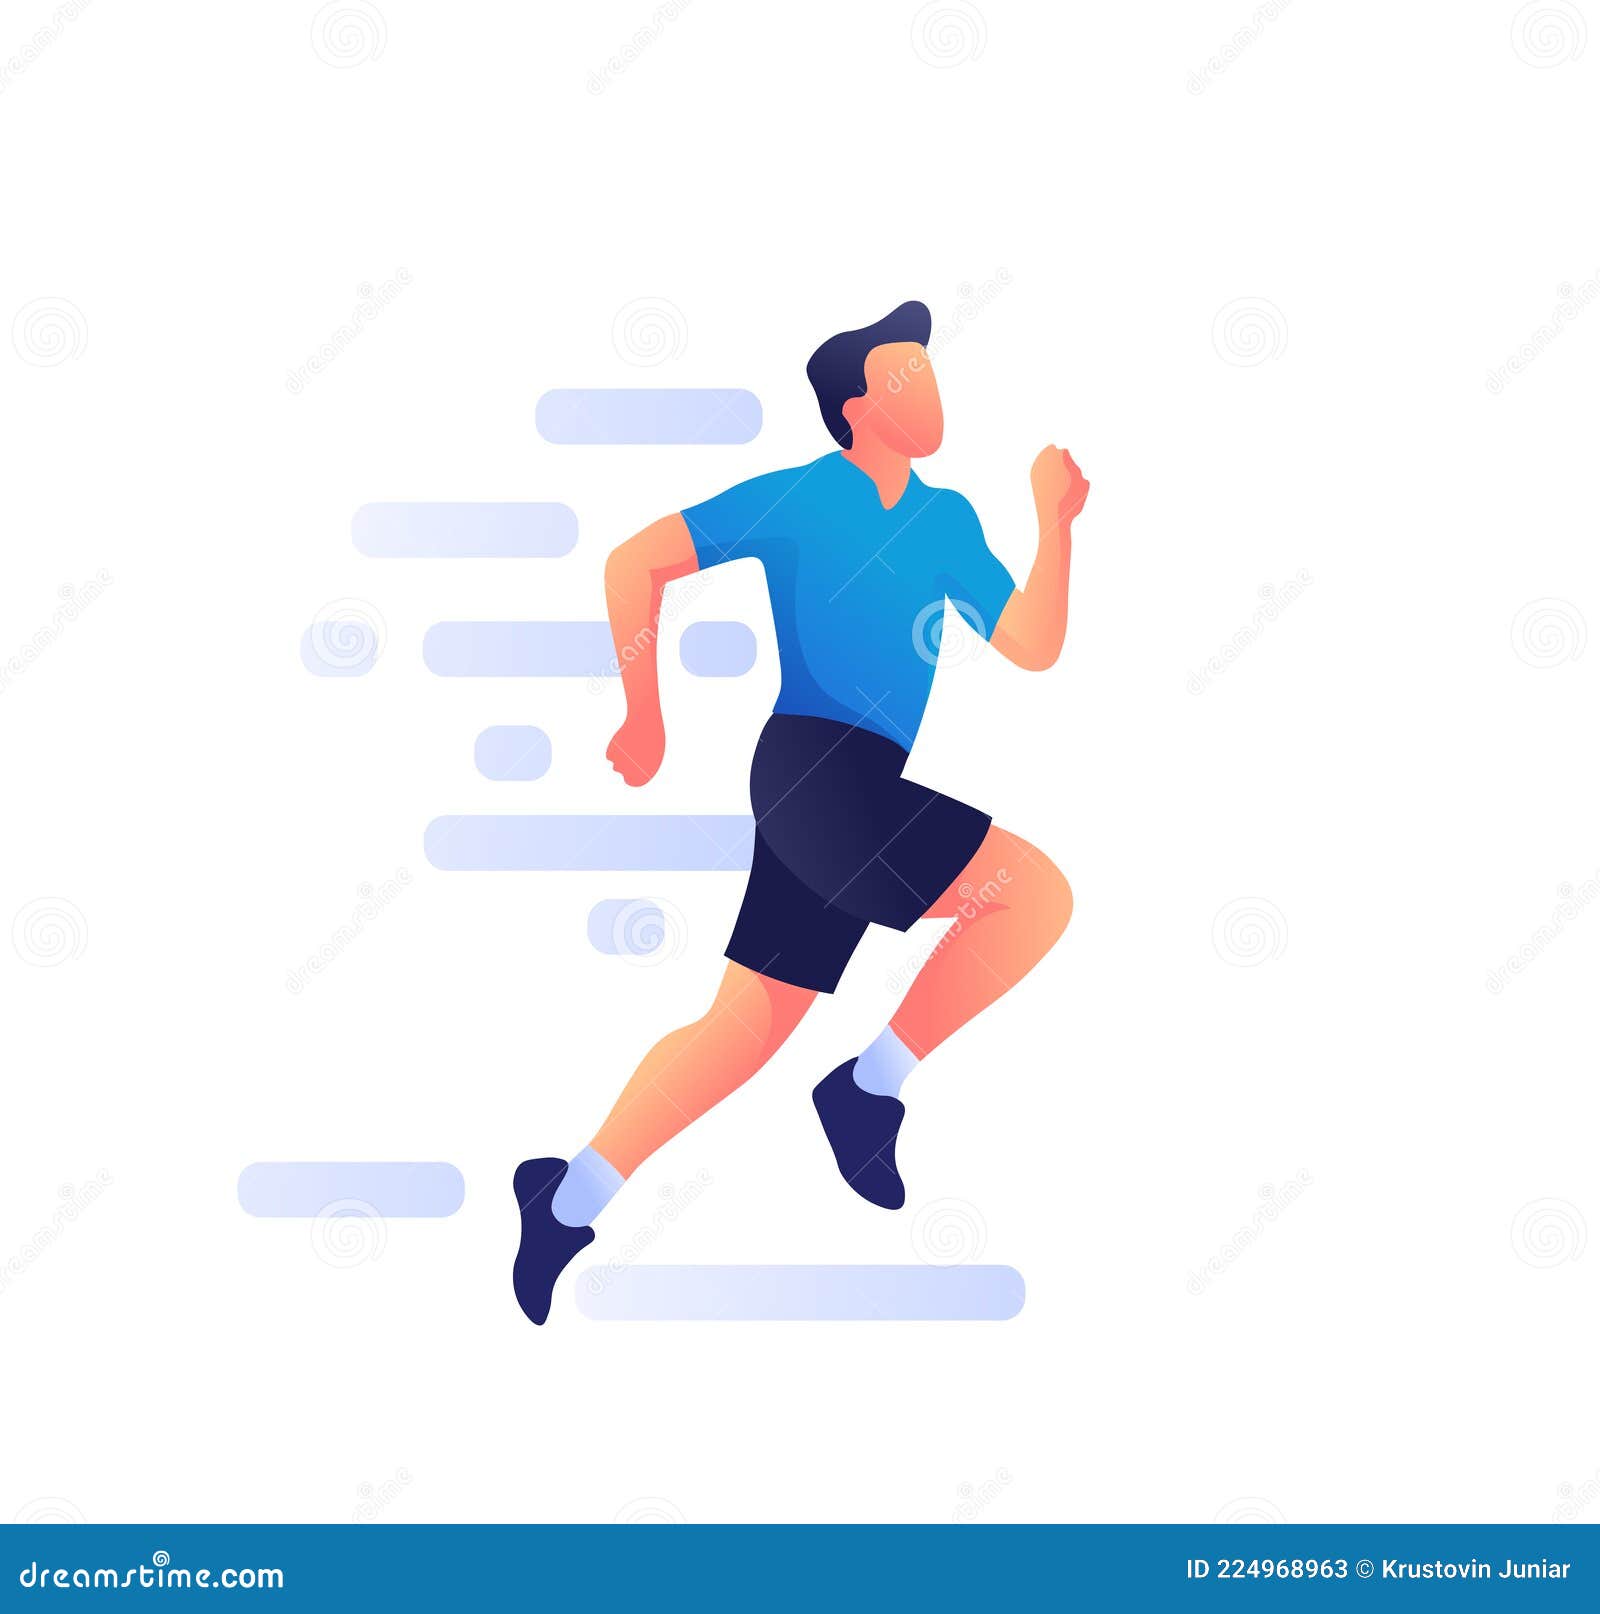 Running Man Cartoon Character Jogging Stock Vector - Illustration of  design, athlete: 224968963